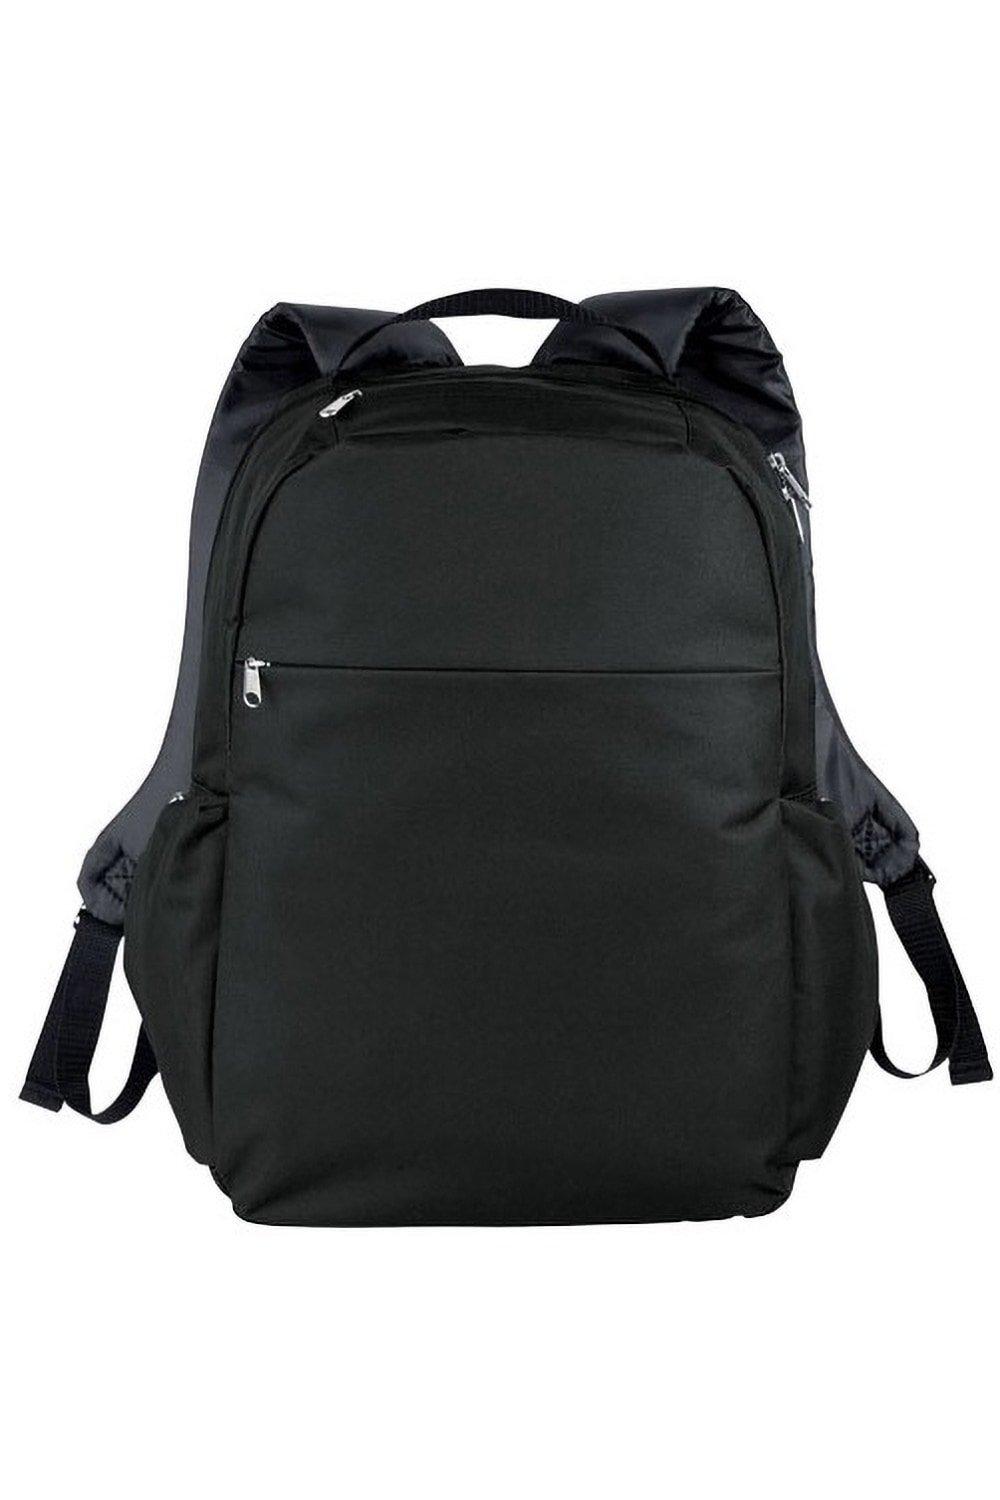 Тонкий рюкзак для ноутбука с диагональю 15,6 дюйма Bullet, черный рюкзак для ноутбука seasons 15 6 дюйма антивандальный msp3010 серый